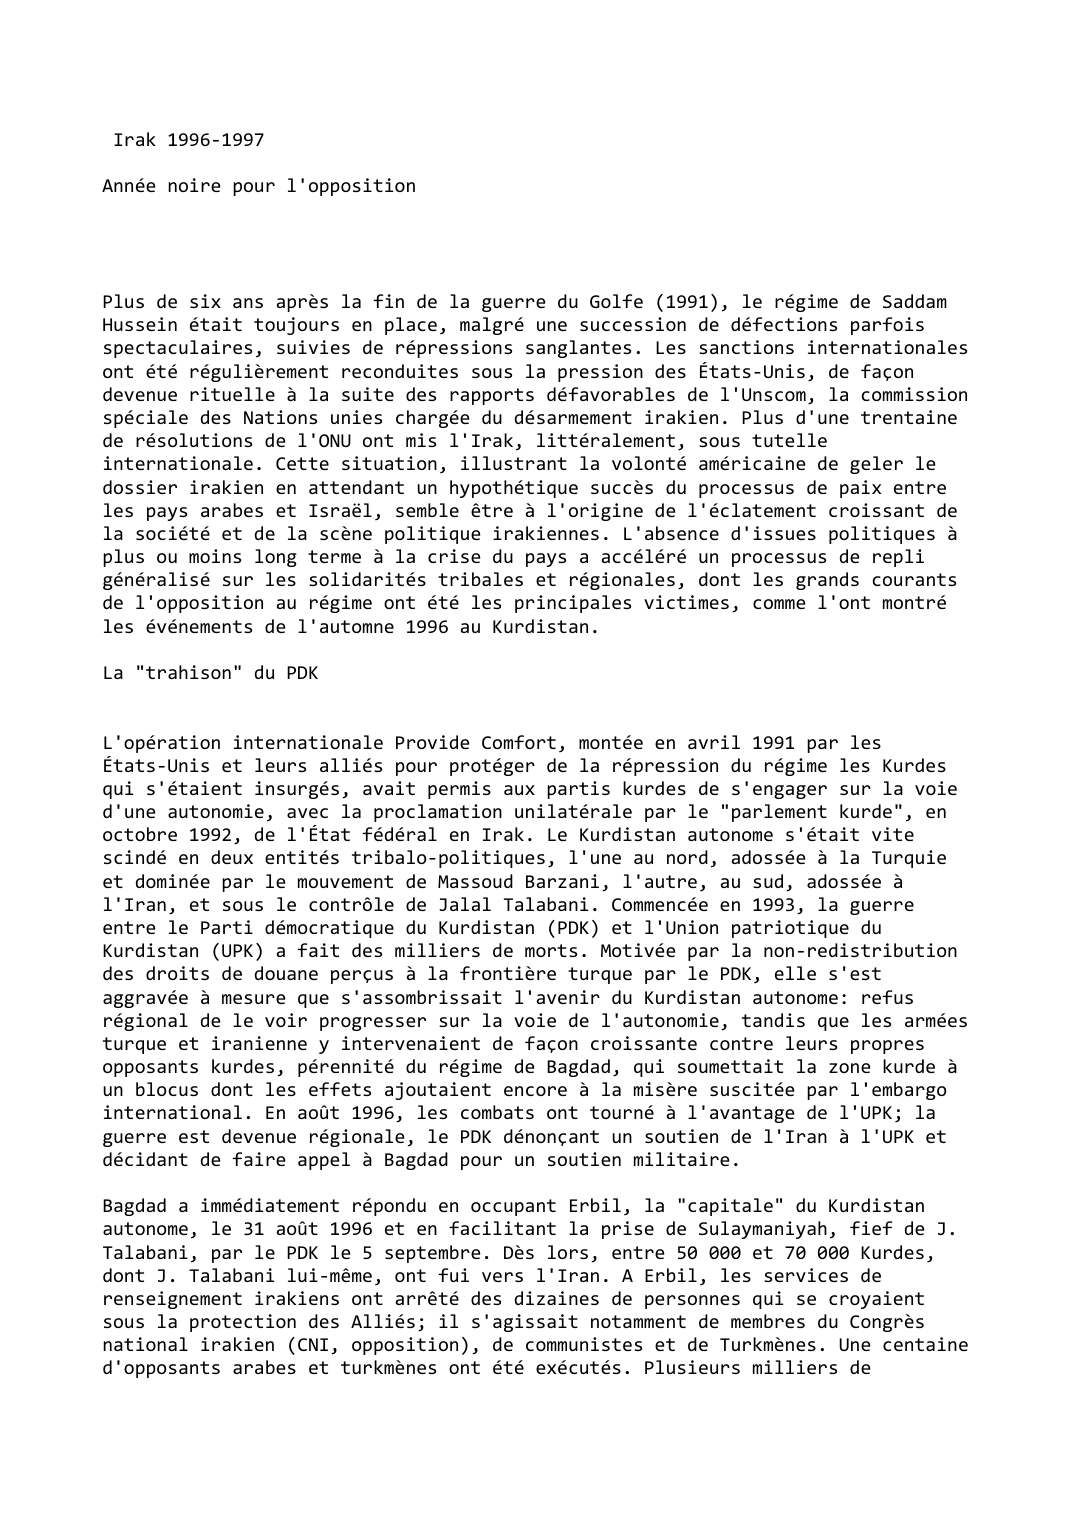 Prévisualisation du document Irak (1996-1997)

Année noire pour l'opposition